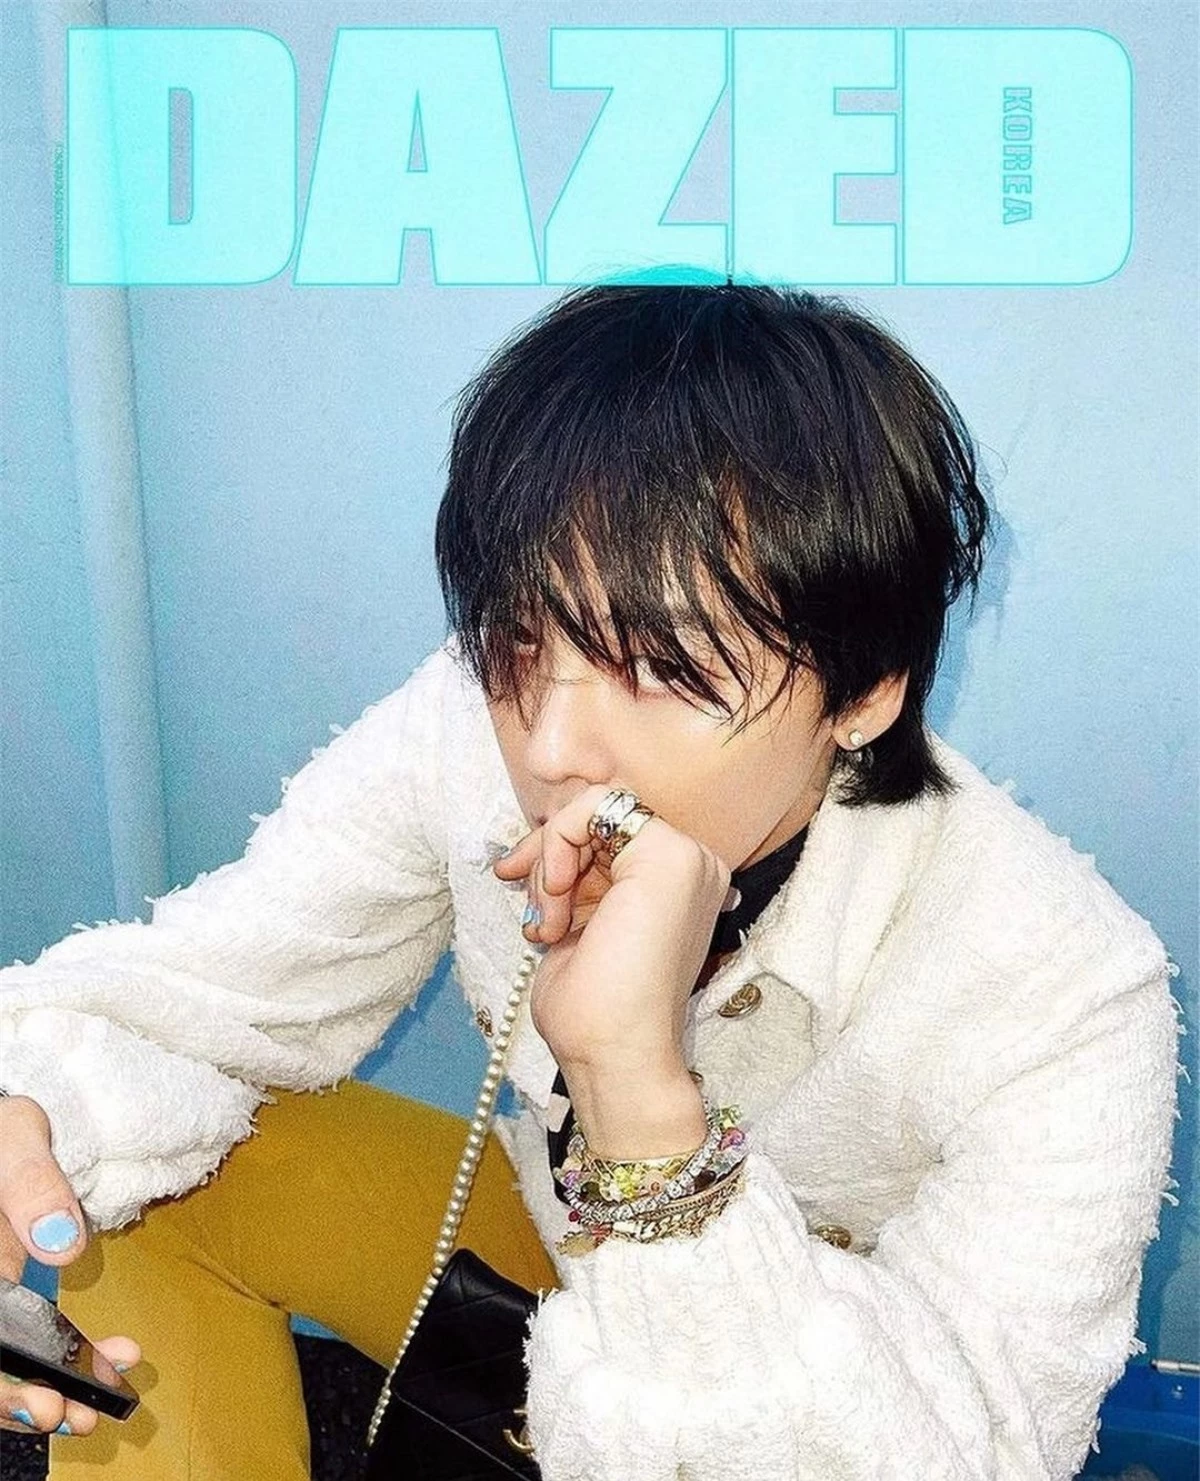 Mới đây, Dazed Korea công bố G-Dragon là gương mặt trang bìa số đặc biệt kỷ niệm 13 năm hoạt động của tạp chí này.